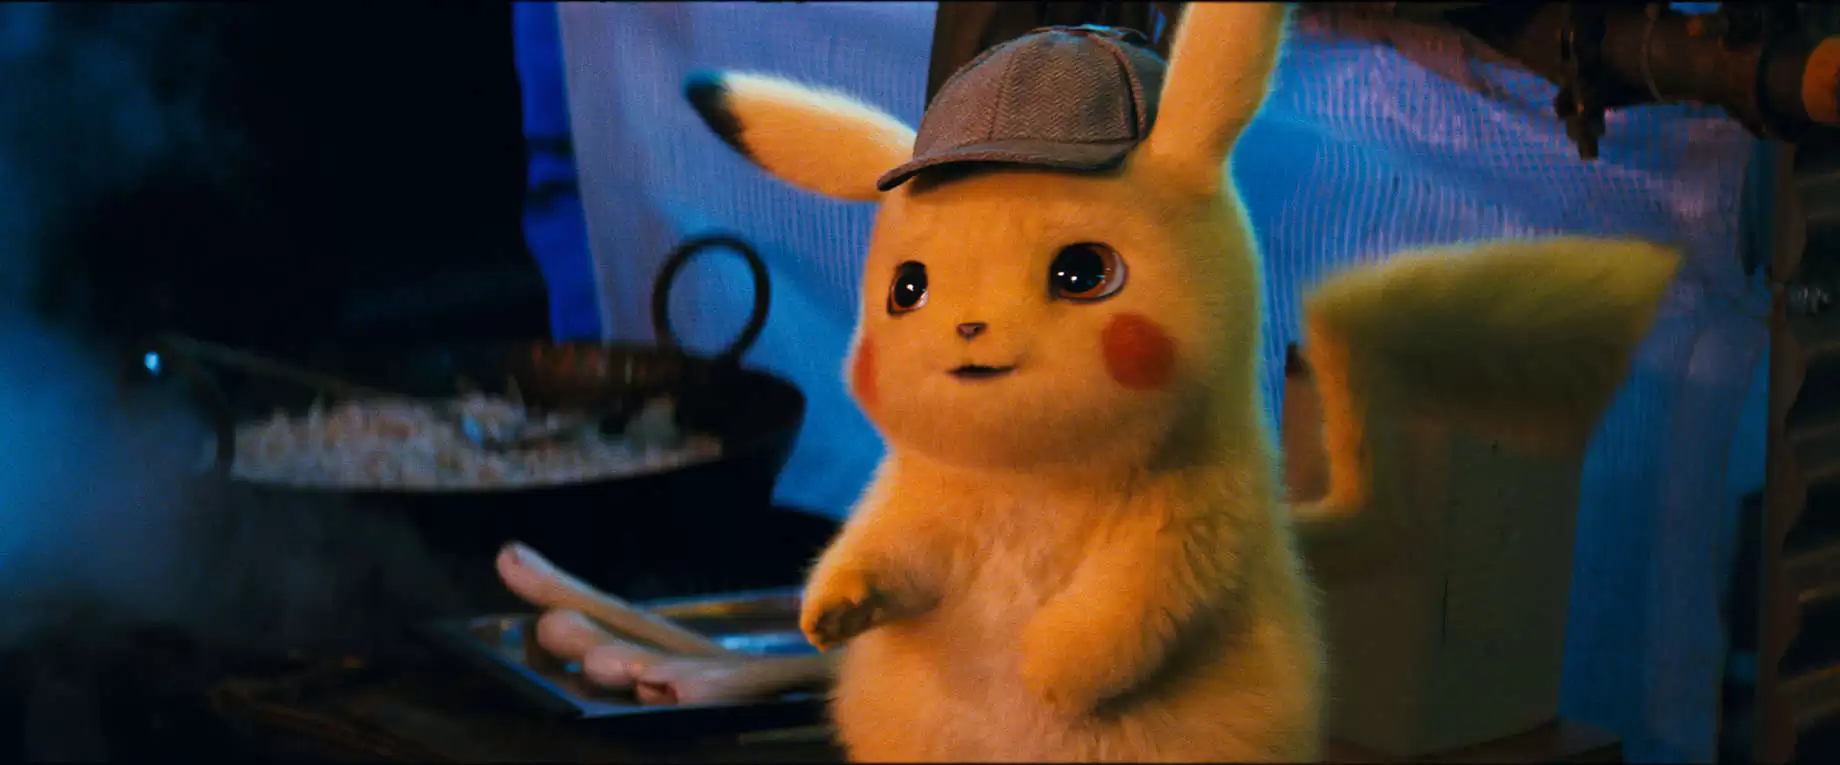 gn | Detective Pikachu | รีวิวหนัง Pokémon: Detective Pikachu หนังจากเกมที่ดีที่สุด? จริงหรือ (ไม่สปอย)